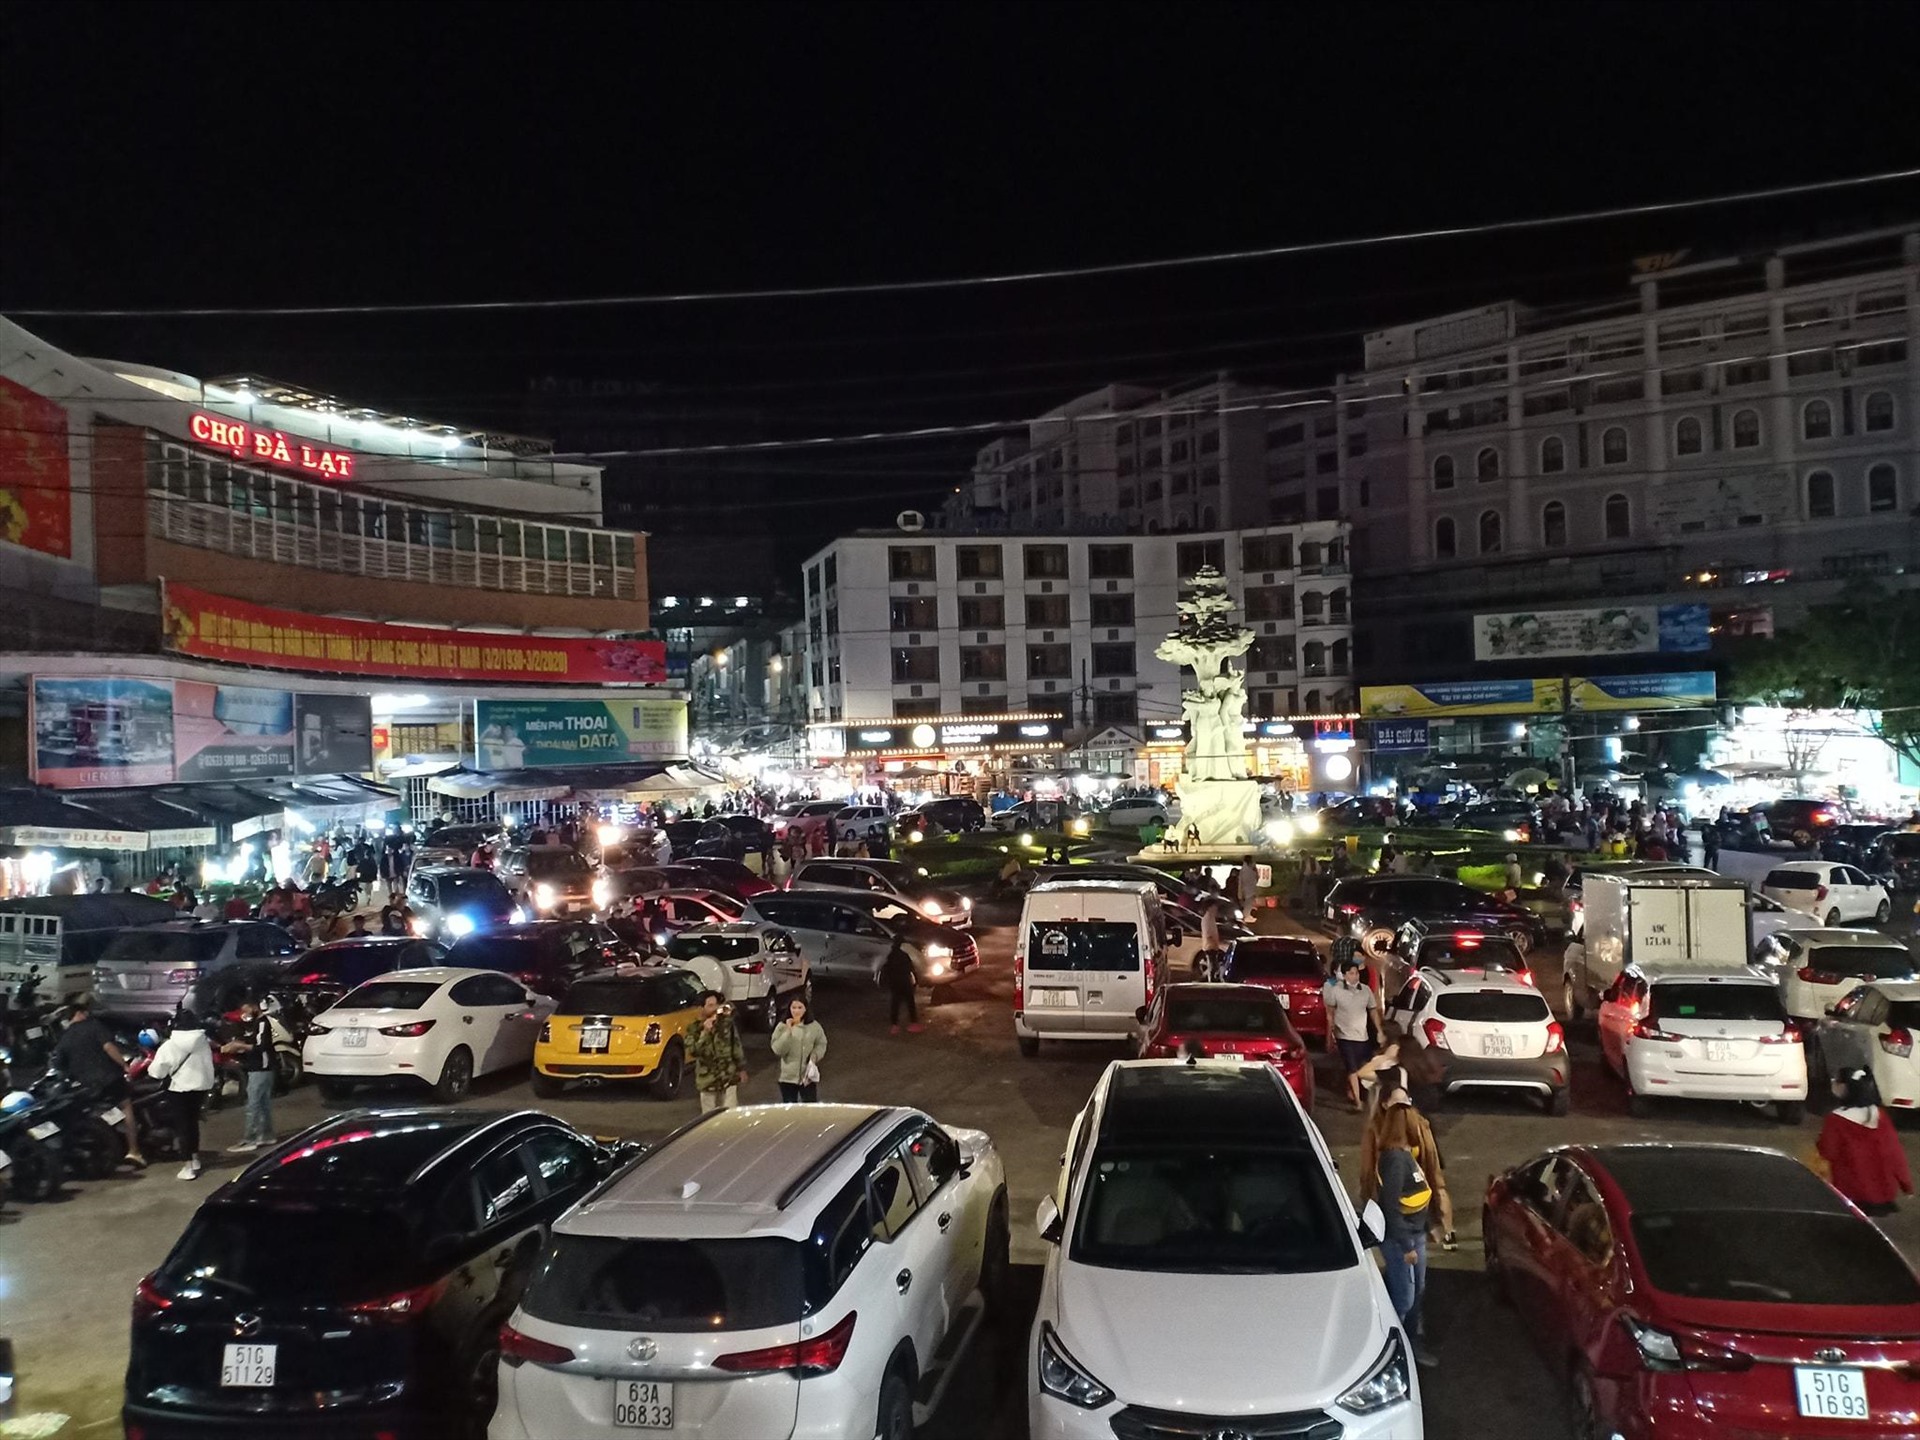 Đêm 30.4, các khu vực trung tâm thành phố Đà Lạt trở nên chen chúc vì dòng người từ khắp nơi đổ về. Lin Xong